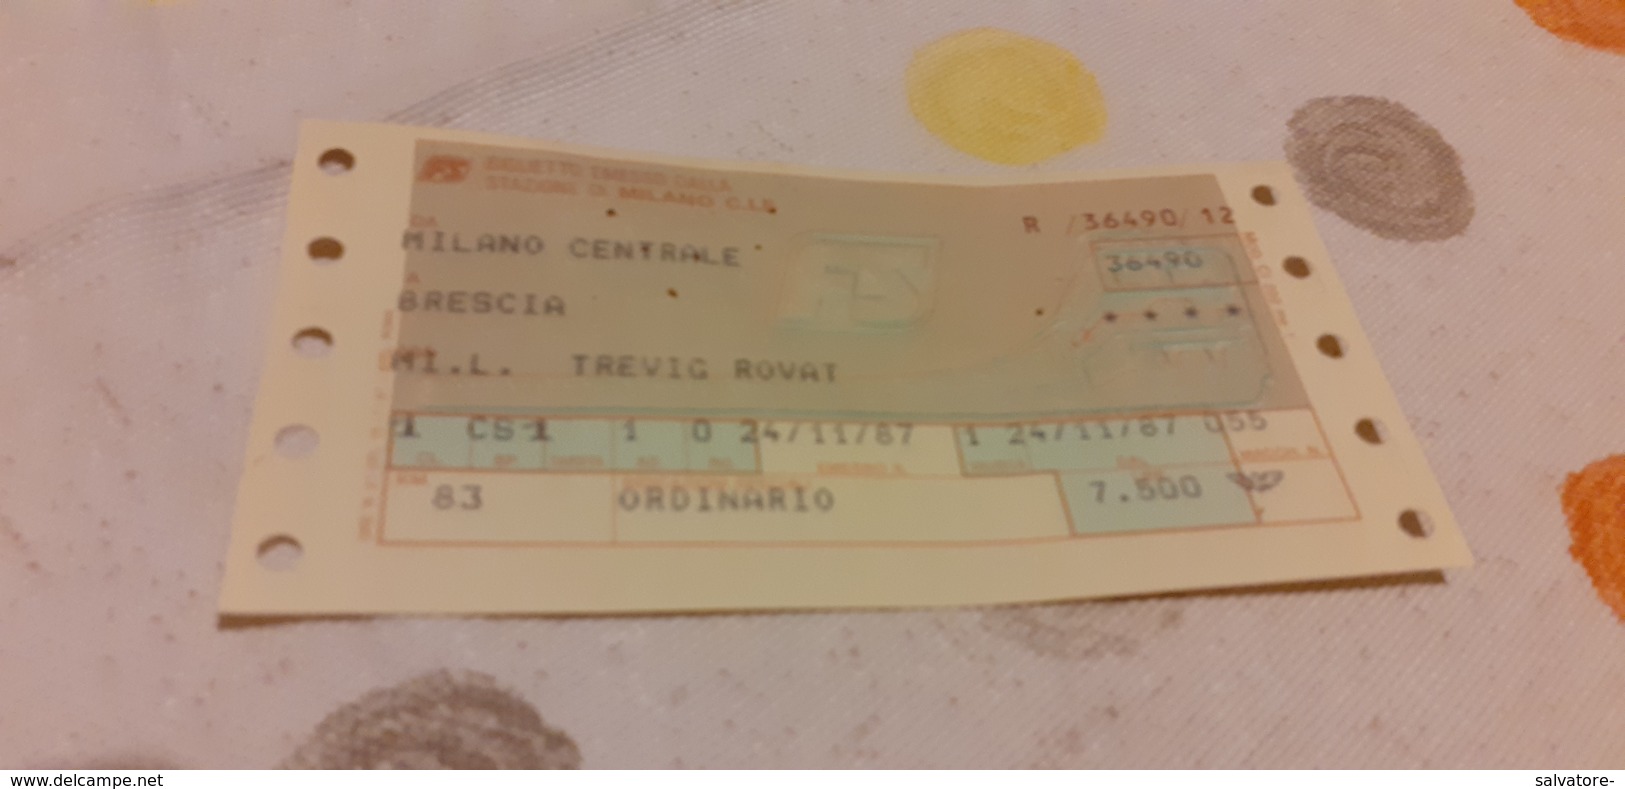 BIGLIETTO TRENO DA MILANO CENTRALE A BRESCIA 1987 - Europa